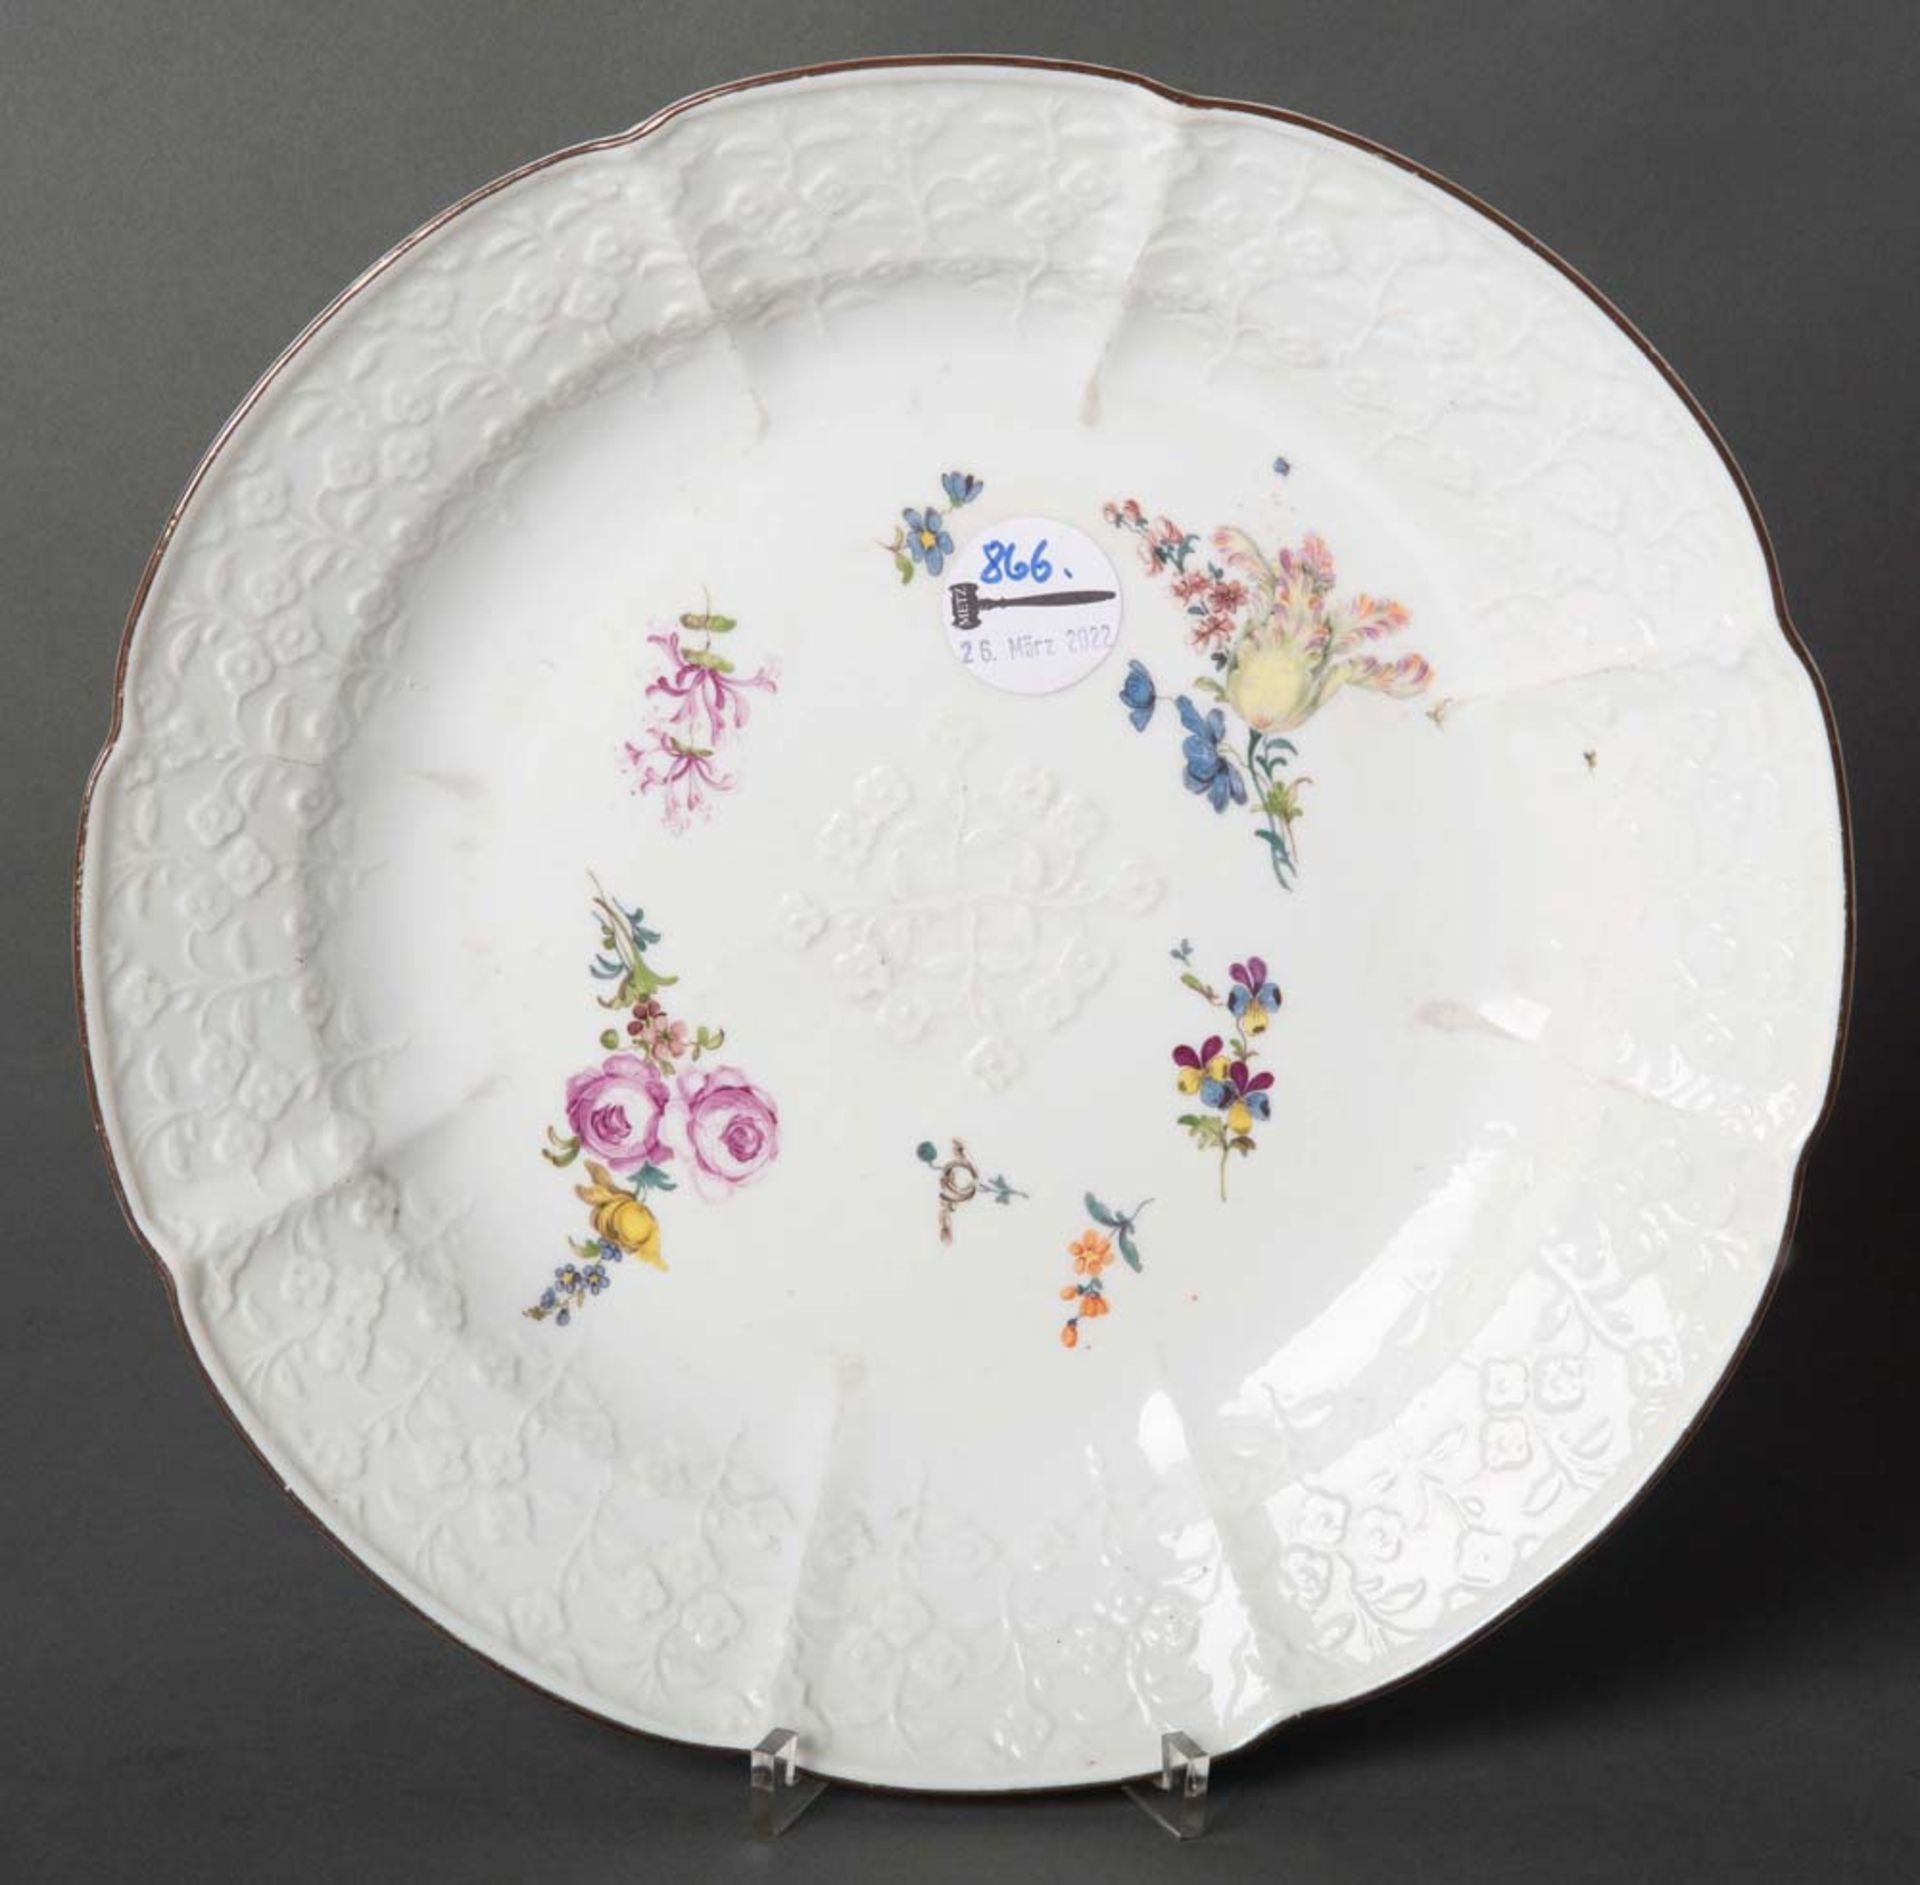 Große runde Platte. Meissen 1750. Porzellan mit Blütenrelief. Freiräume bunt floral bemalt. Verso